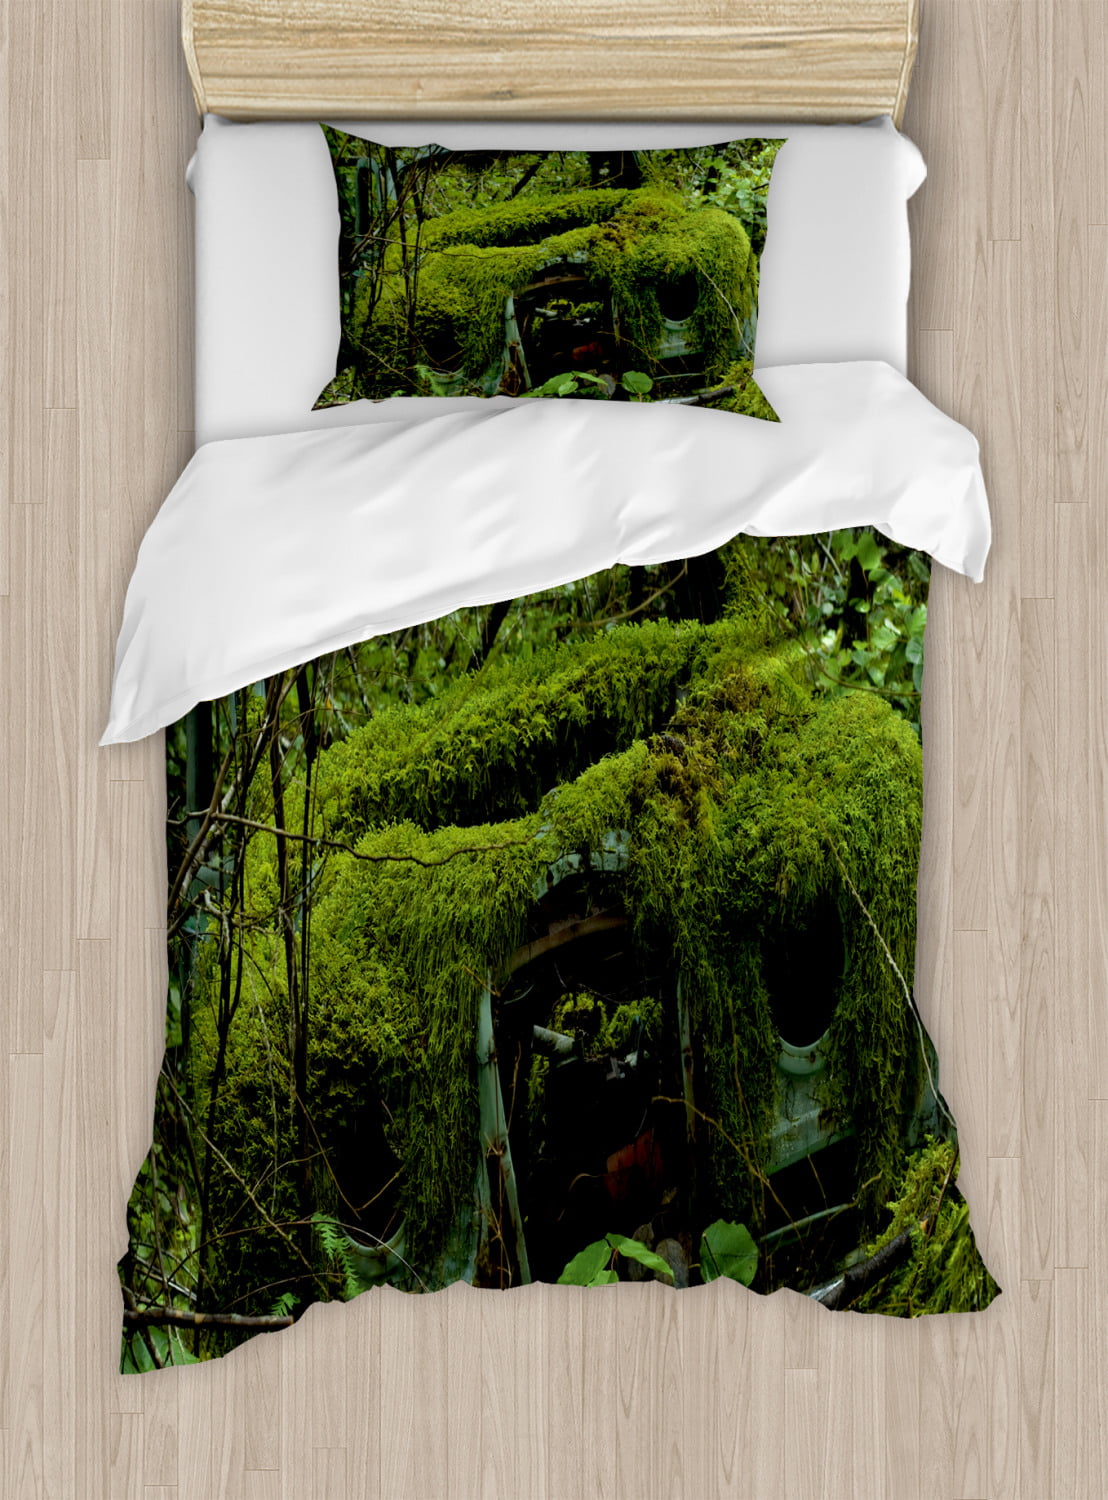 moss green pillow shams